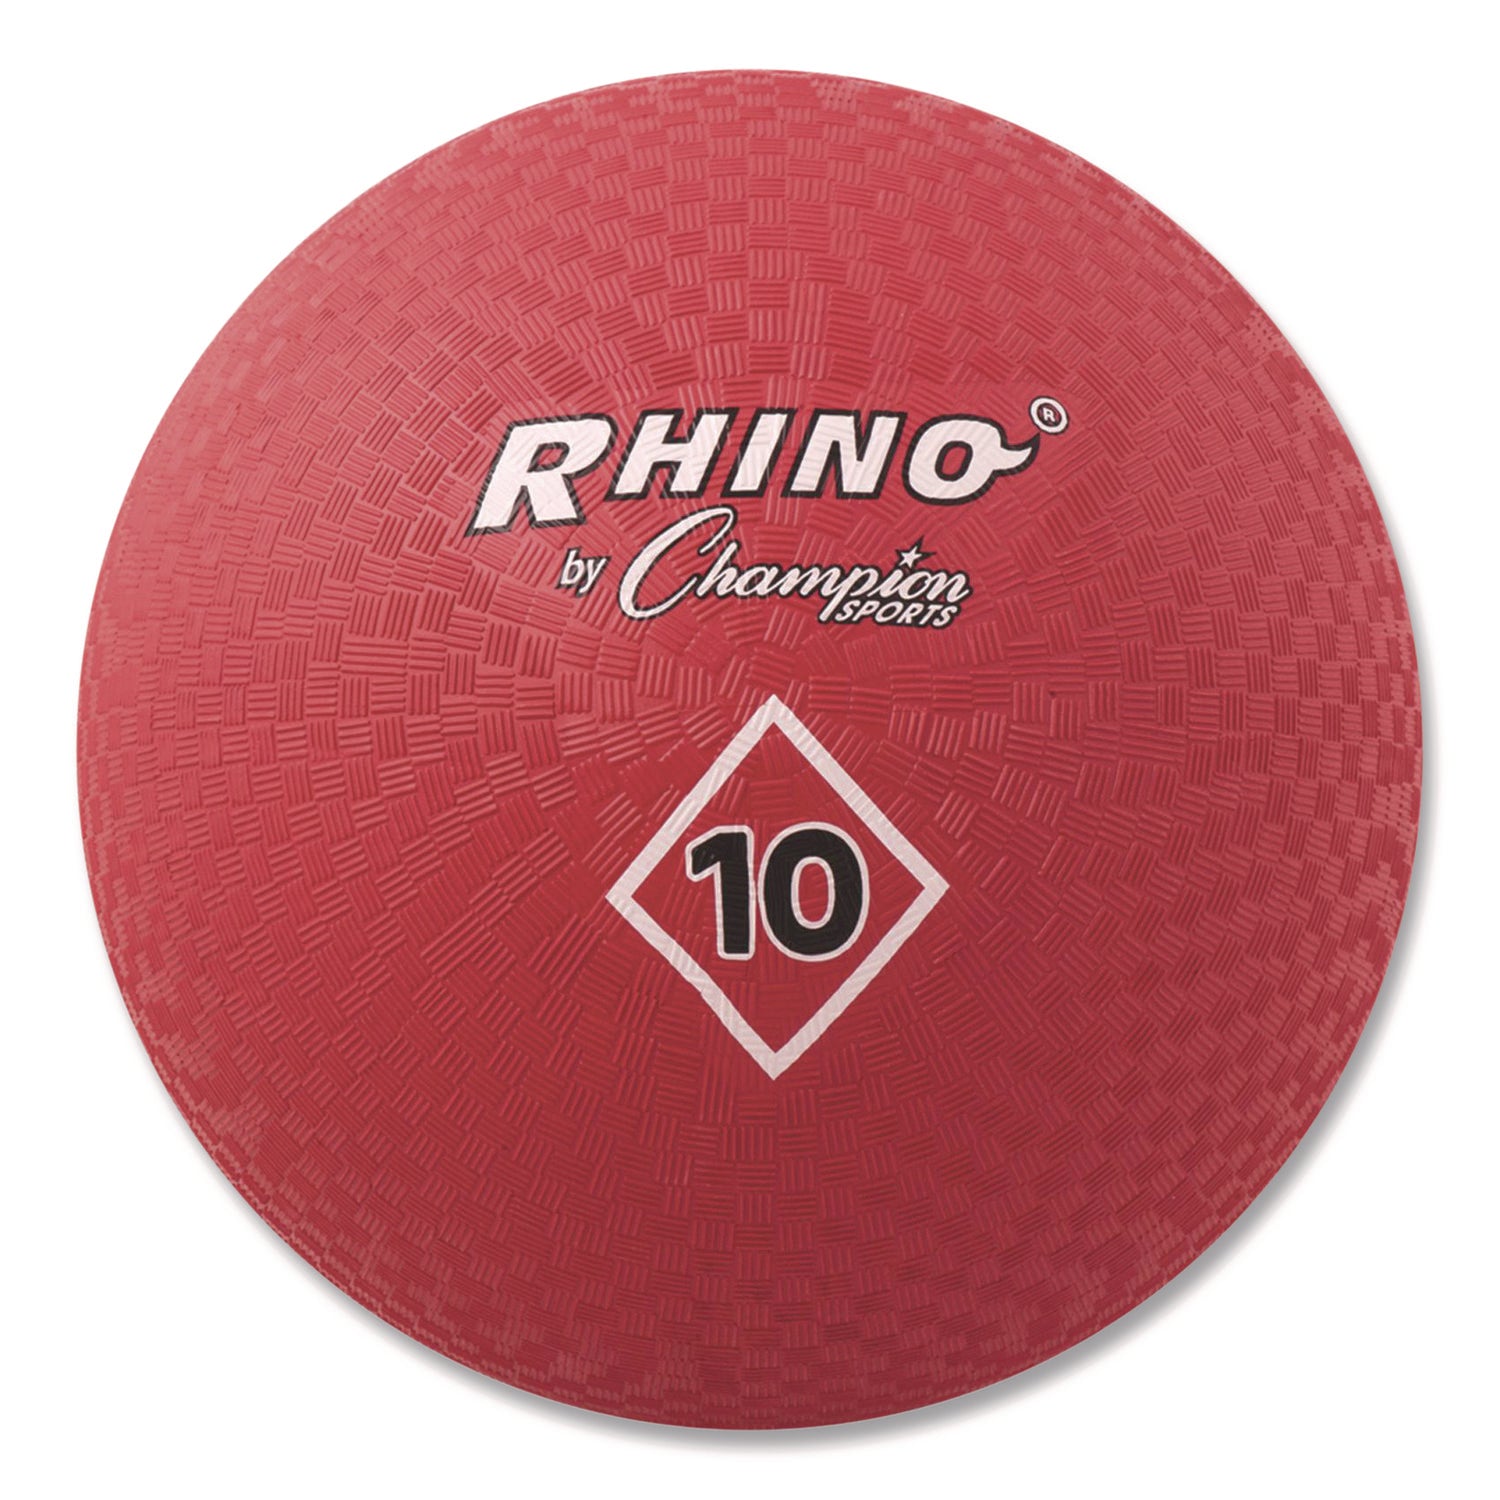 Playground Ball, 10" Diameter, Red - 1